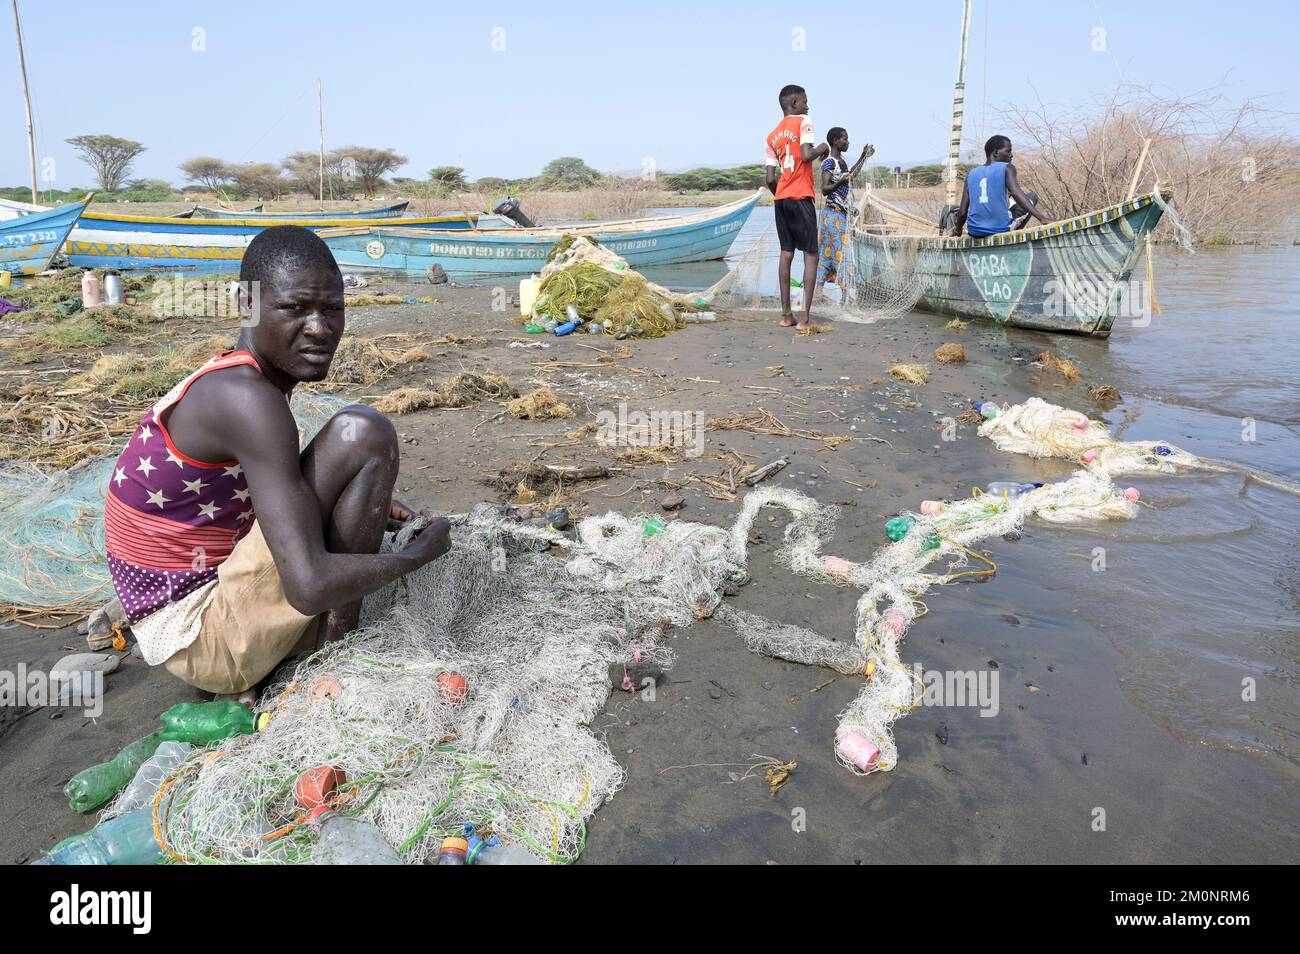 KENIA, Turkana, aldea Anam en el lago Turkana, pescador, residuos plásticos, viejas botellas de PET / KENIA, Turkana, Dorf Anam am Lake Turkana, Fischer, Plastikmüll Foto de stock